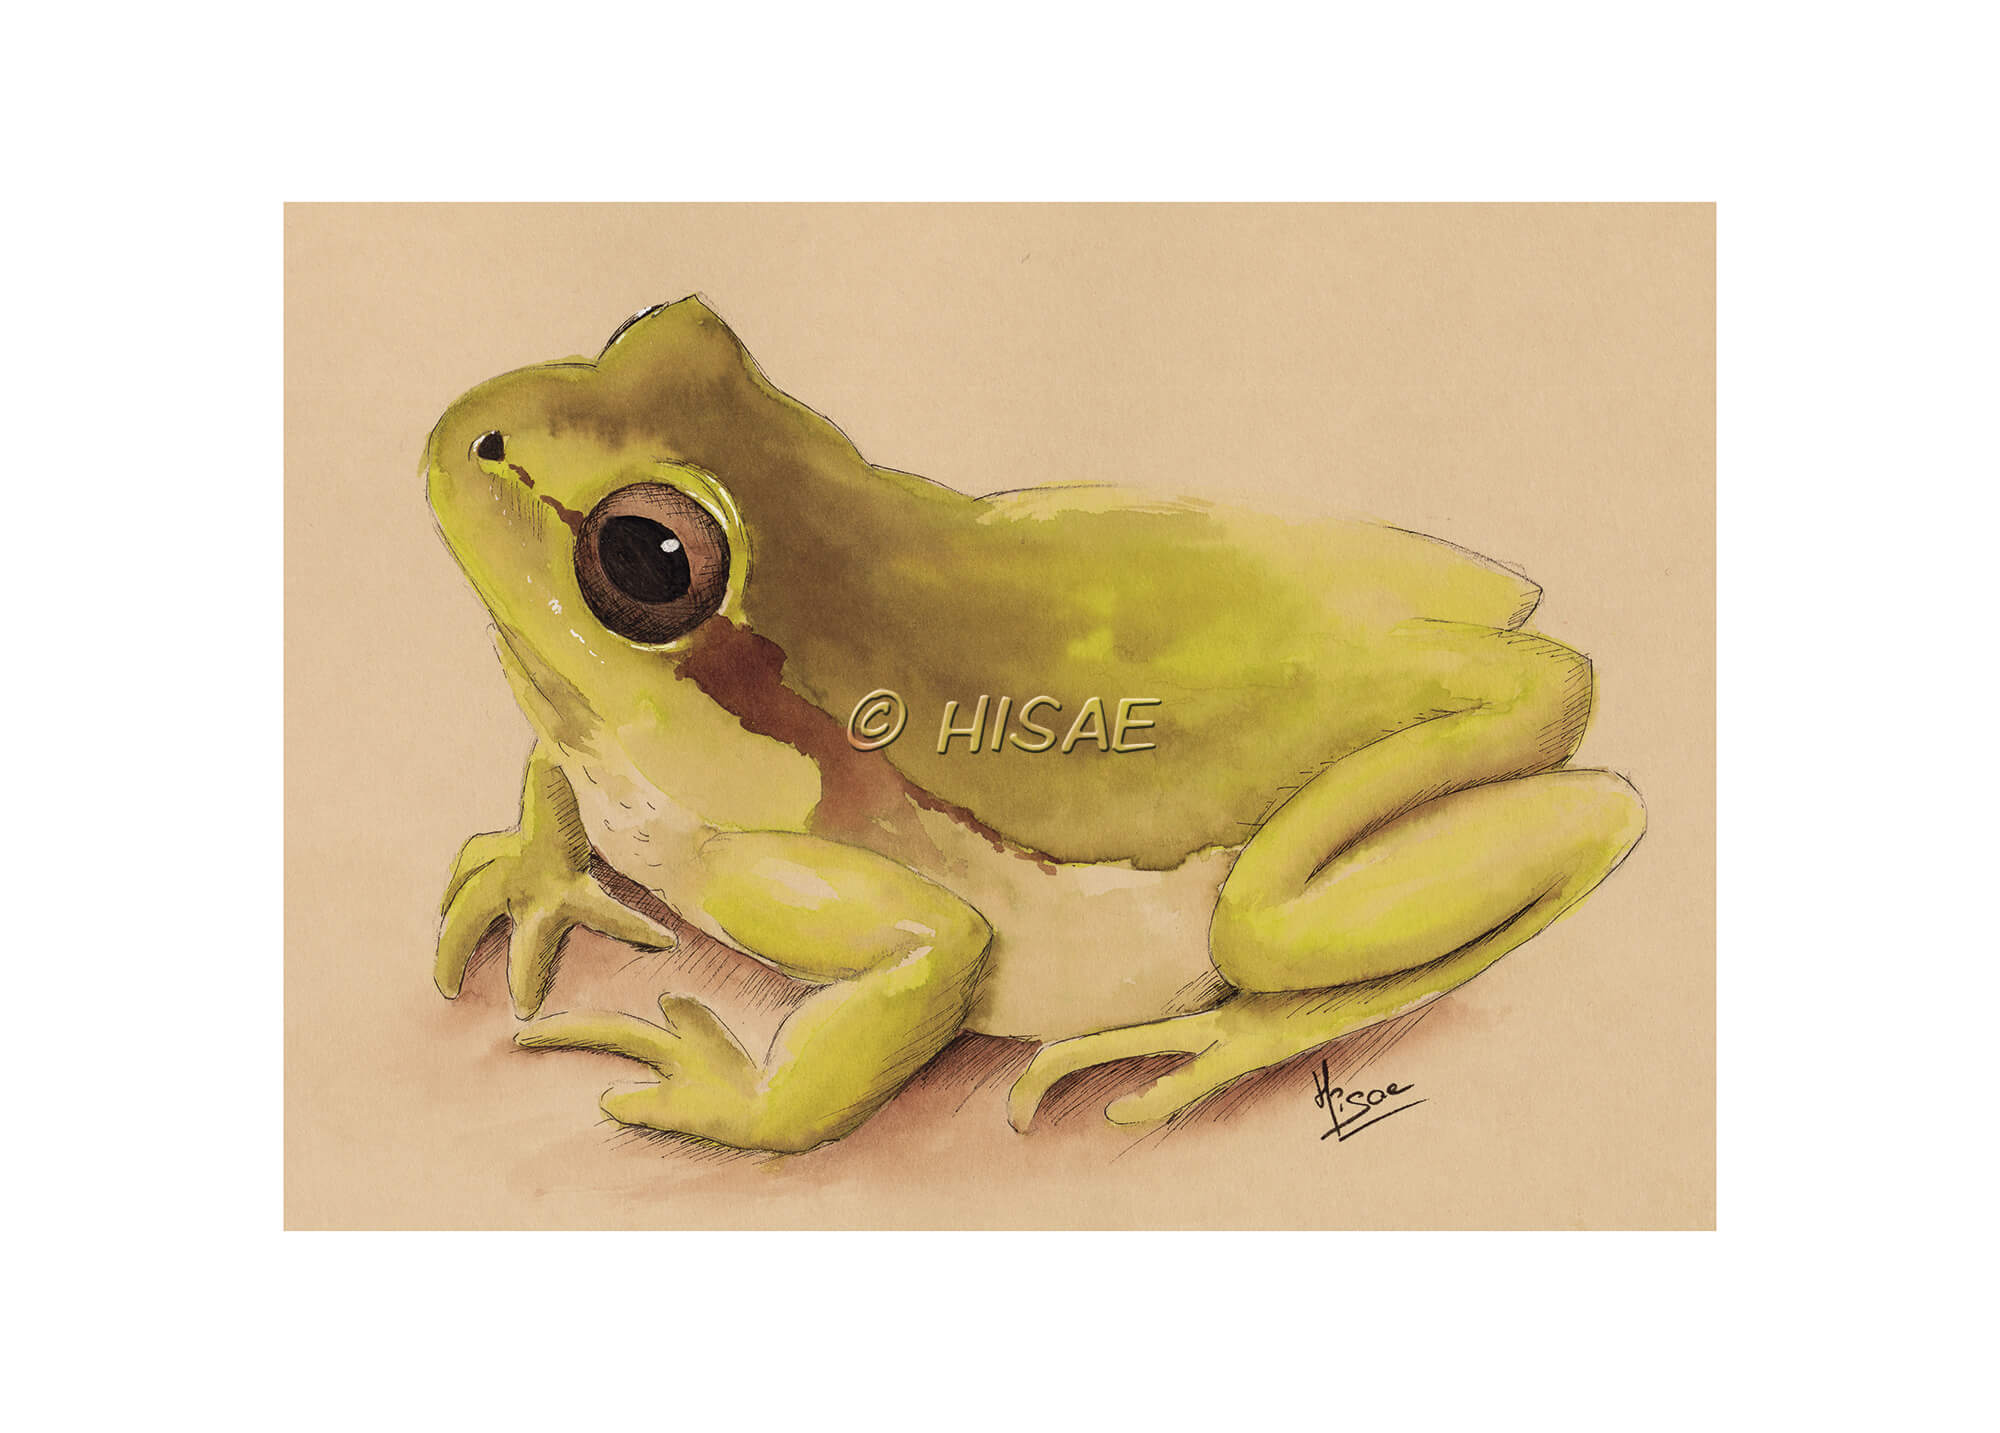 Impression laser d'un dessin original à l'encre verte sur chevalet représentant une grenouille ©Hisae illustrations